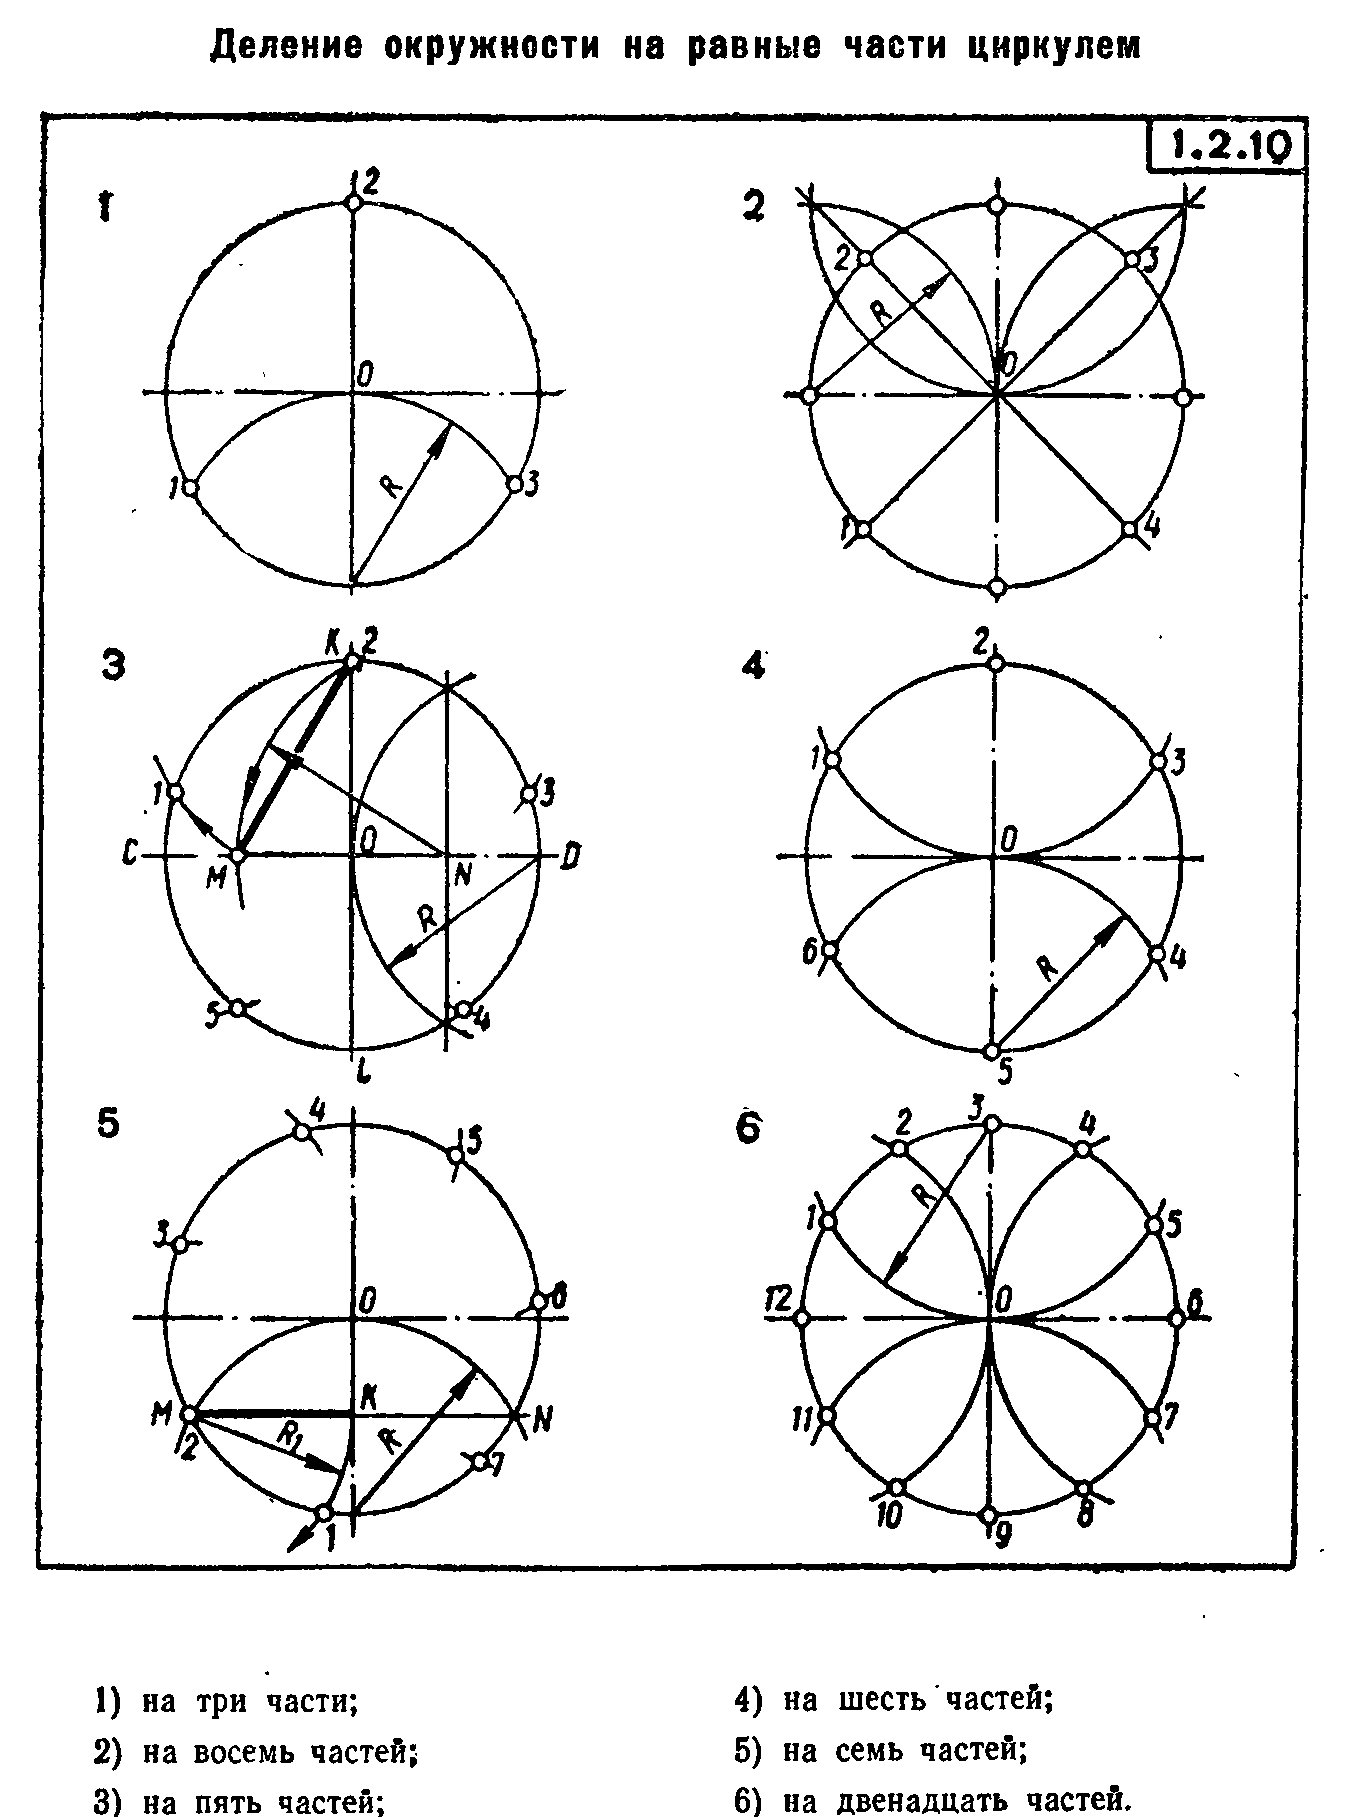 Как с помощью циркуля разделить окружность на 3. Как поделить окружность на 3 части с помощью циркуля. Разделить окружность на 8 равных частей циркулем. Деление круга на равные части с помощью циркуля. Деление круга на 8